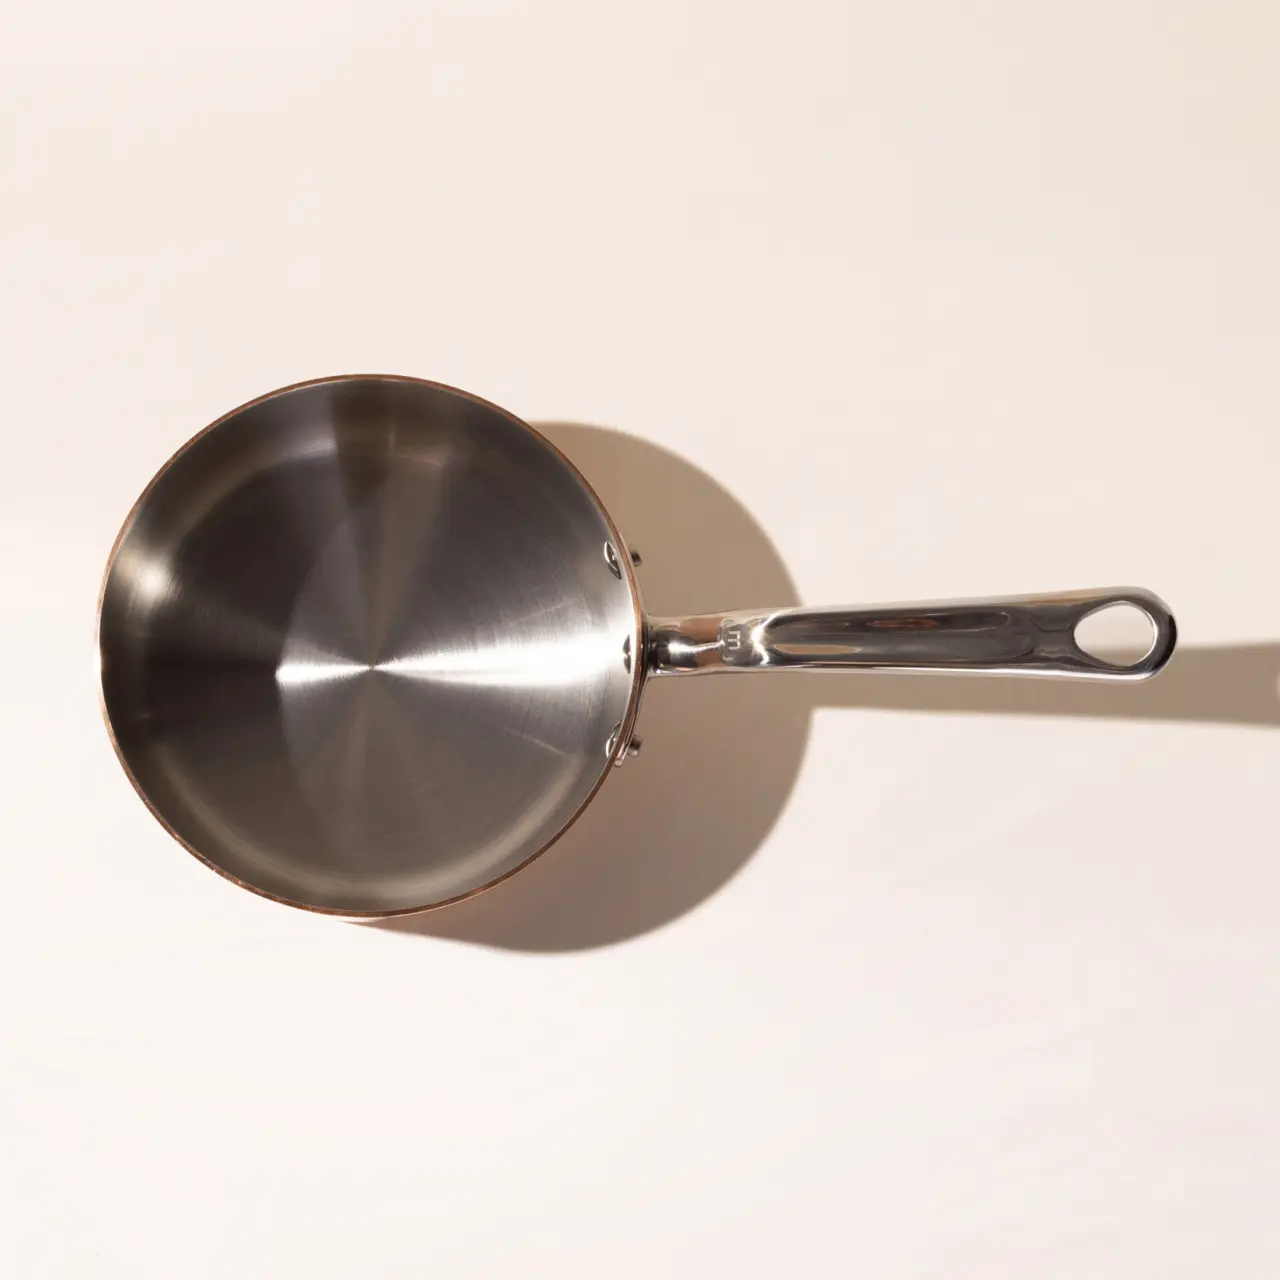 Copper, 1-5/8 Qt Saucier Pan Without Lid, 7.87 Diameter